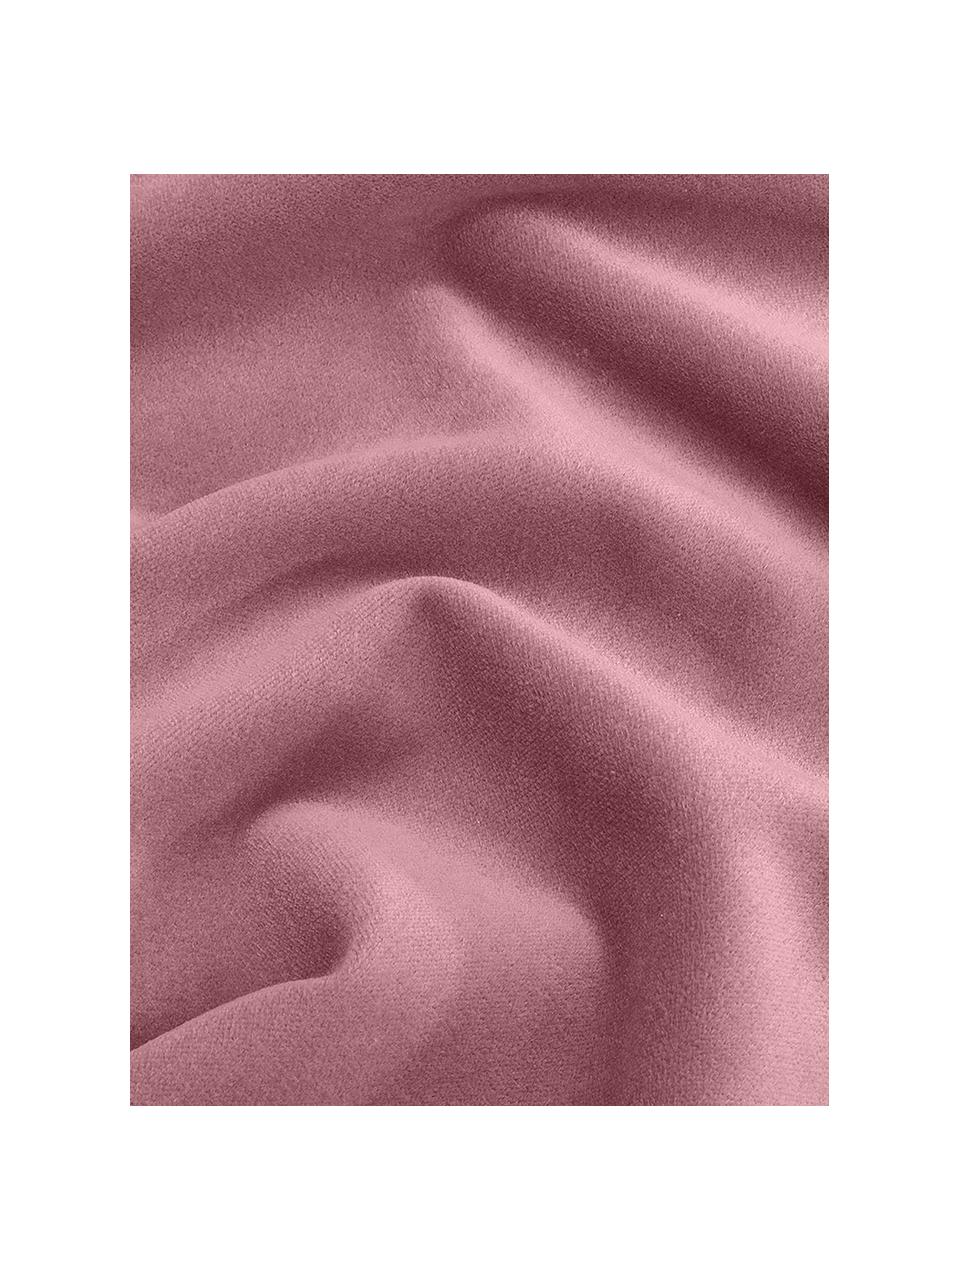 Einfarbige Samt-Kissenhülle Dana in Altrosa, 100% Baumwollsamt, Altrosa, B 30 x L 50 cm